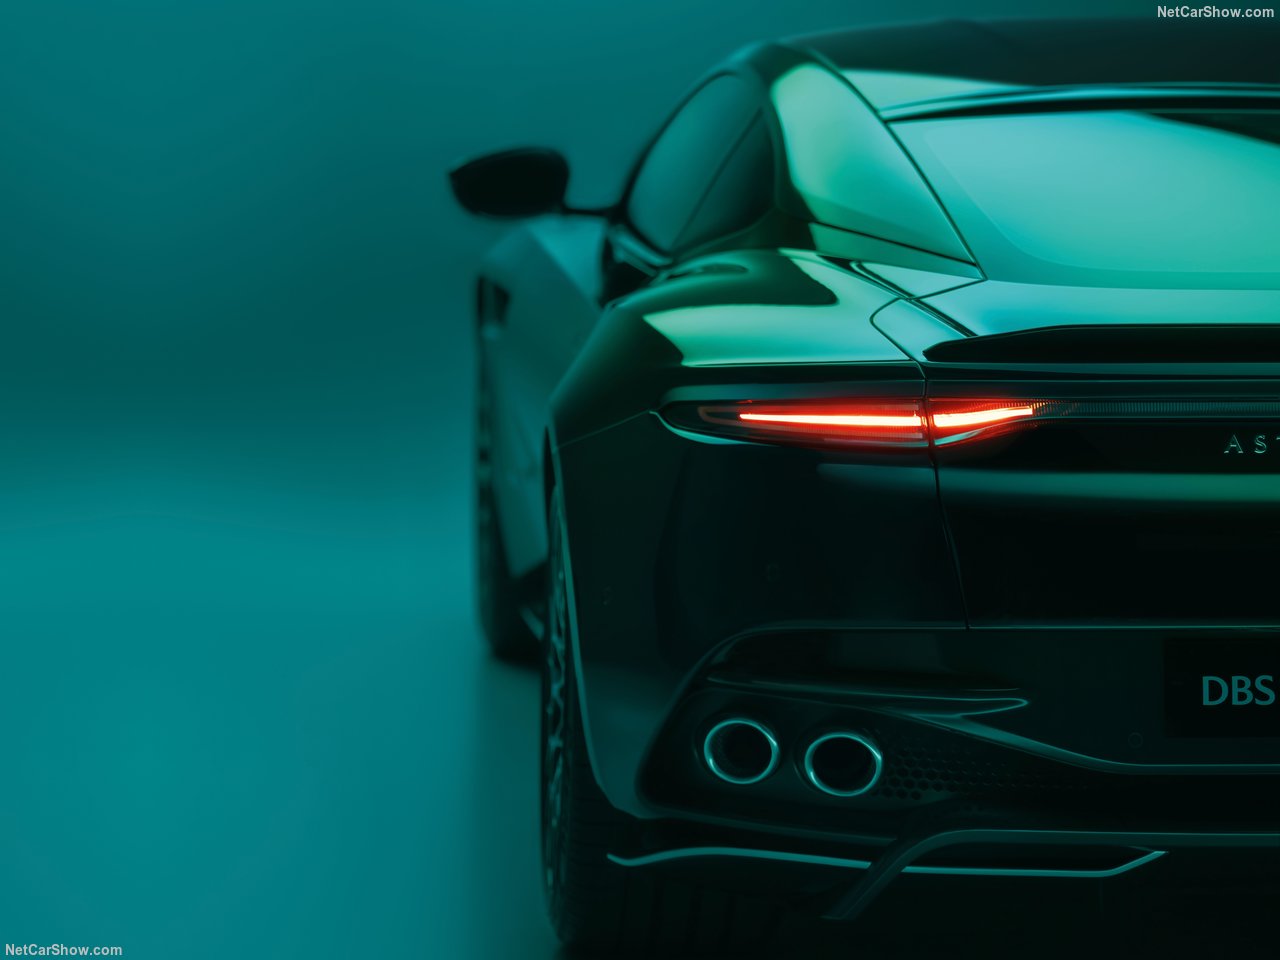 В этом году Aston Martin исполняется 110 лет как производитель автомобилей, и к середине десятилетия британская фирма намерена вступить в новую эру передовых электрифицированных суперкаров и GT. Однако до этого Aston завершит производство своего мощн